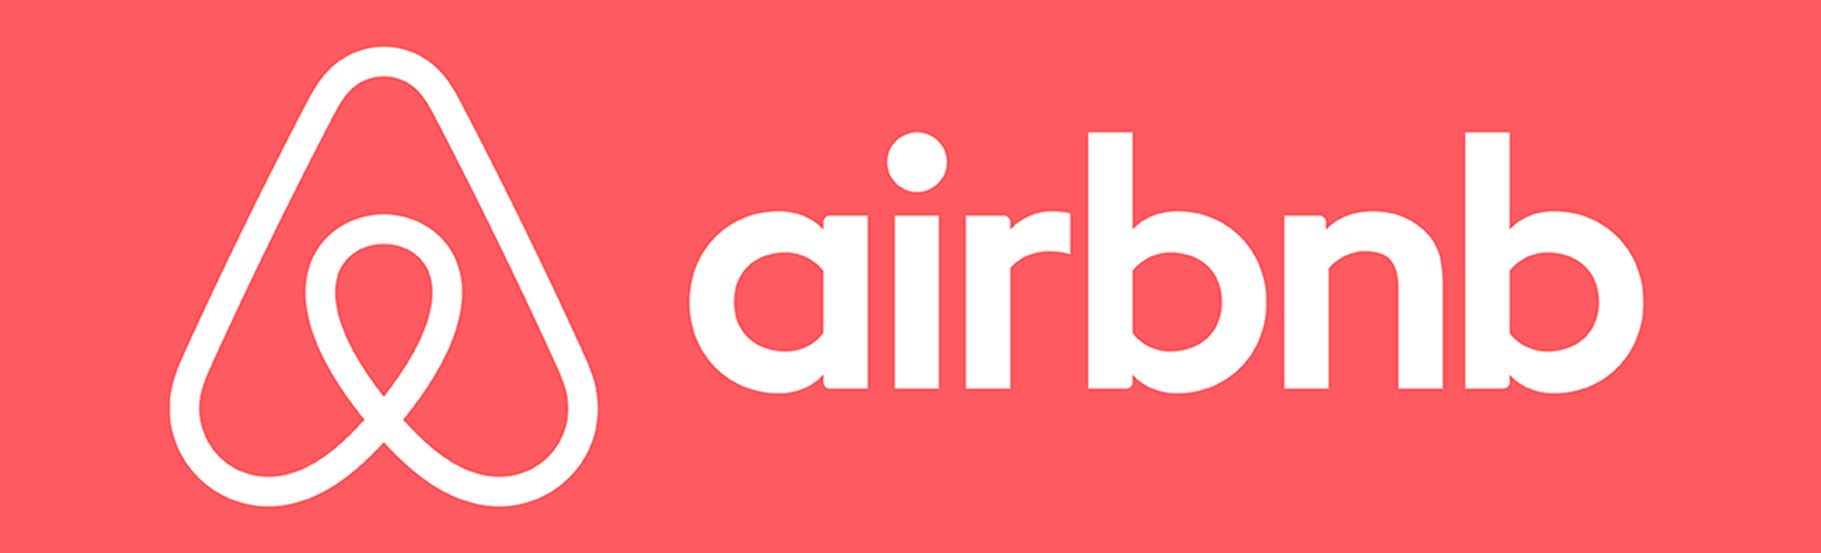 horizontalni logo Airbnb u jednoj boji